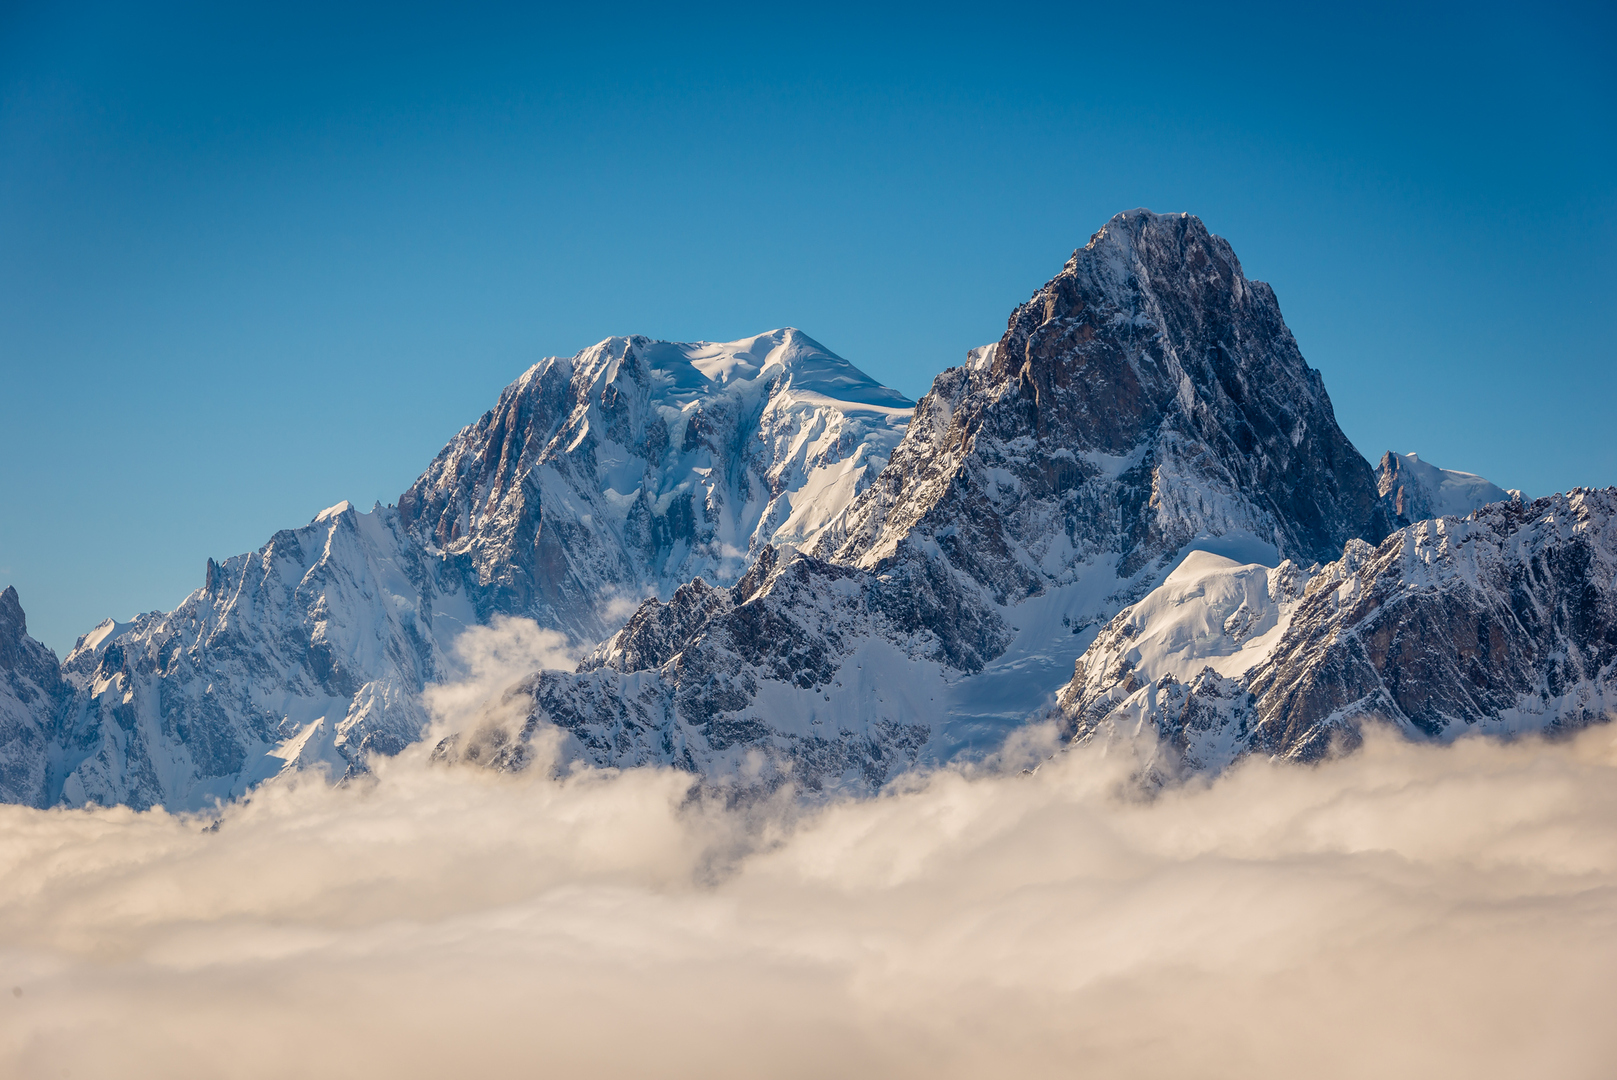 أعلى قمة في جبال الألب تستمر في التقلص وسبب هذا الانكماش يحير العلماء